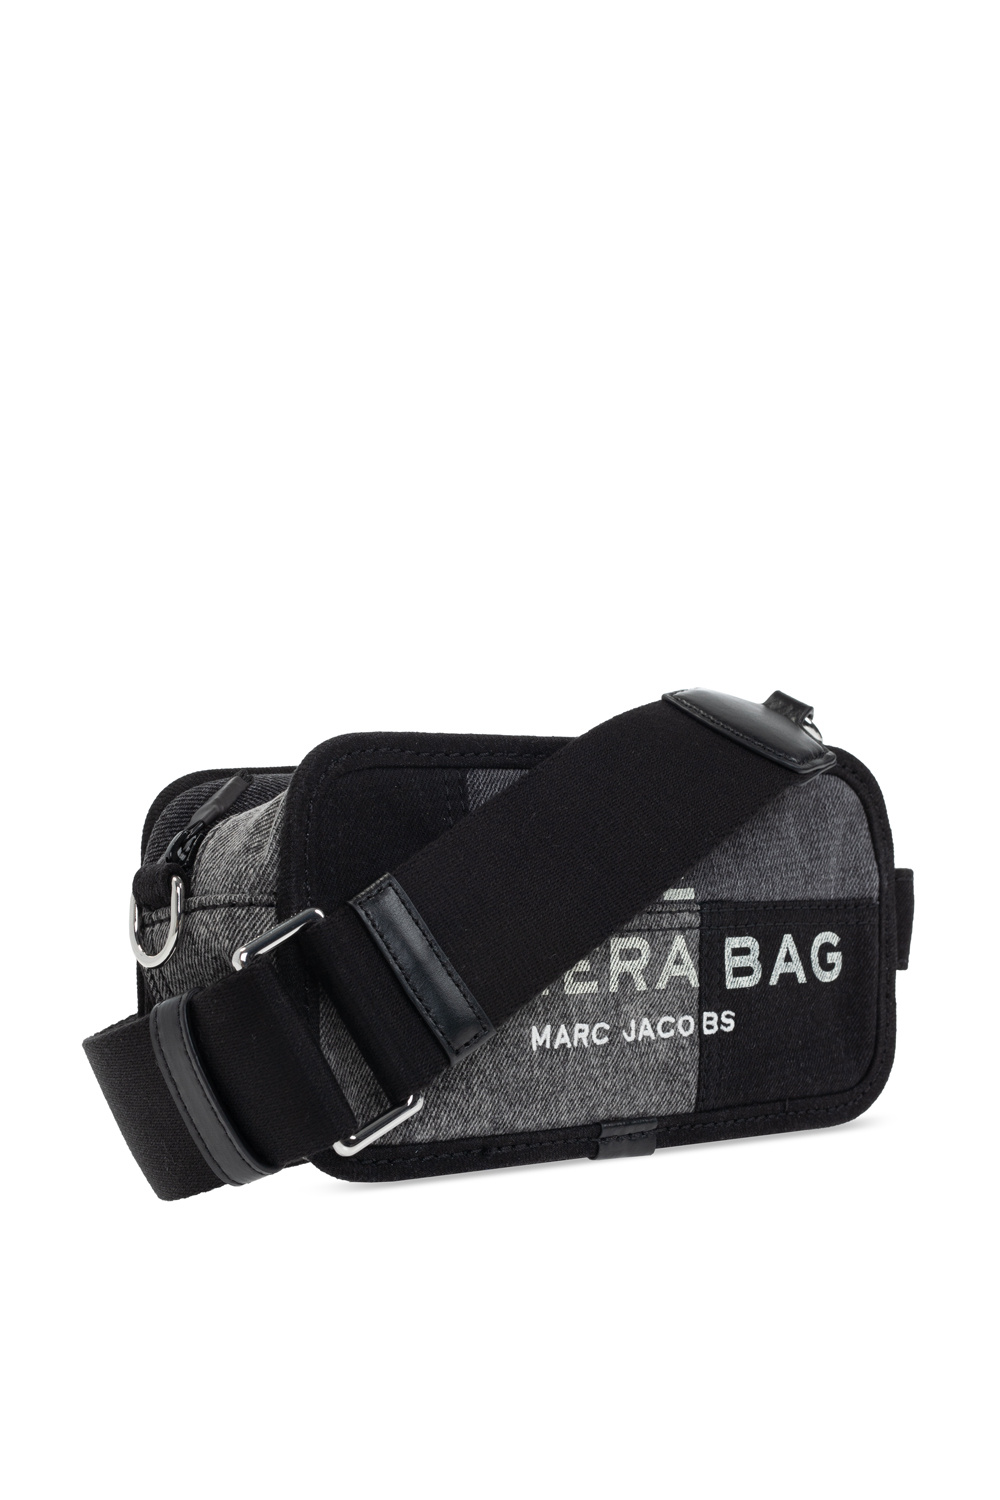 Marc Jacobs ‘The Camera Bag’ shoulder bag